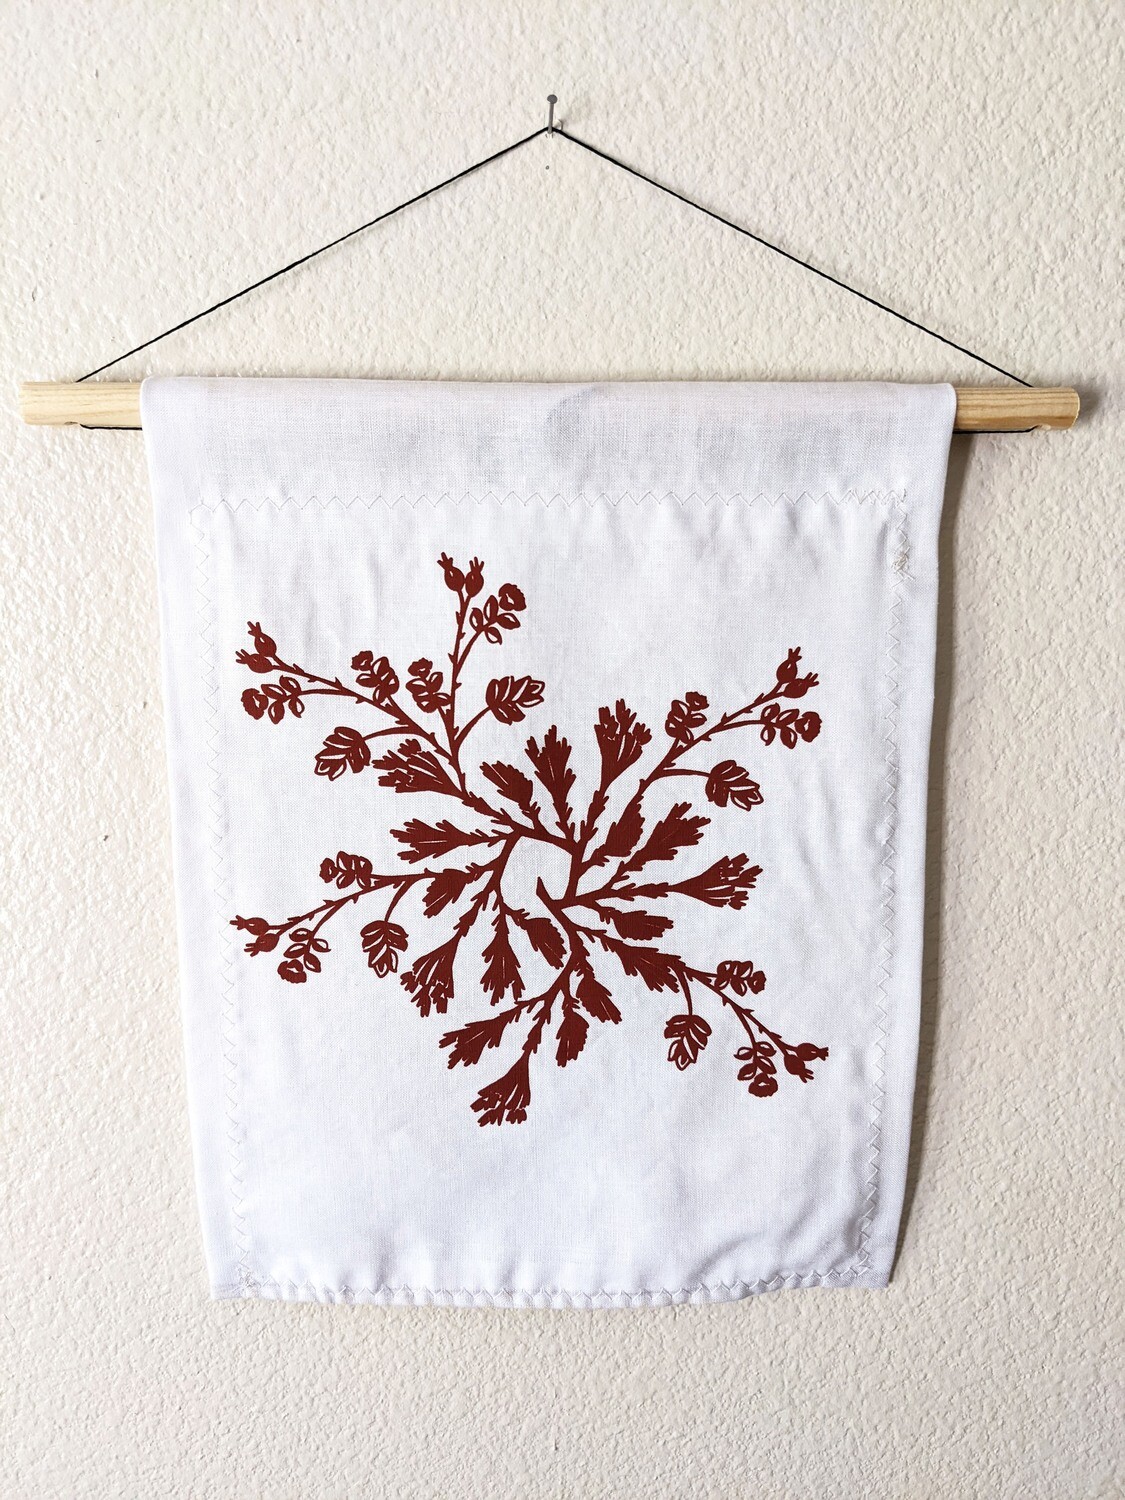 Botanical Wreath Tapestry | Sagebrush & Rose Hip in Deep Red